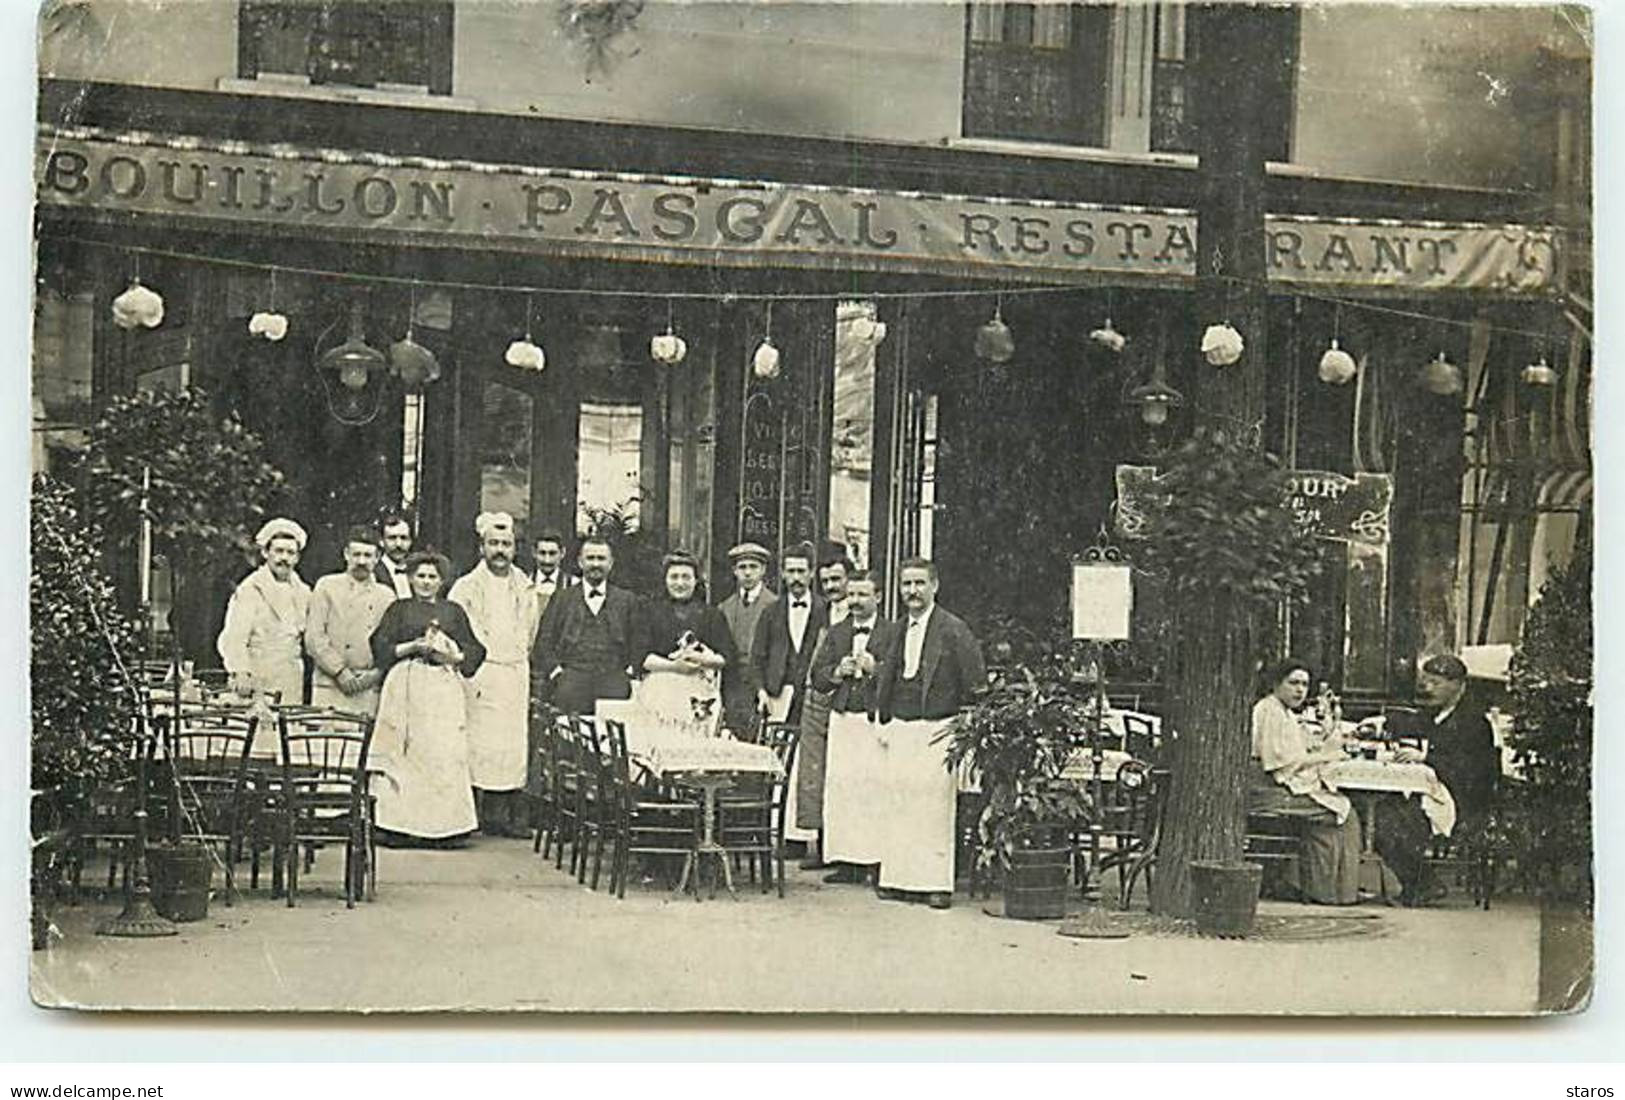 Carte Photo - PARIS - Restaurant Bouillon Pascal - Groupe De Personnel - Pubs, Hotels, Restaurants